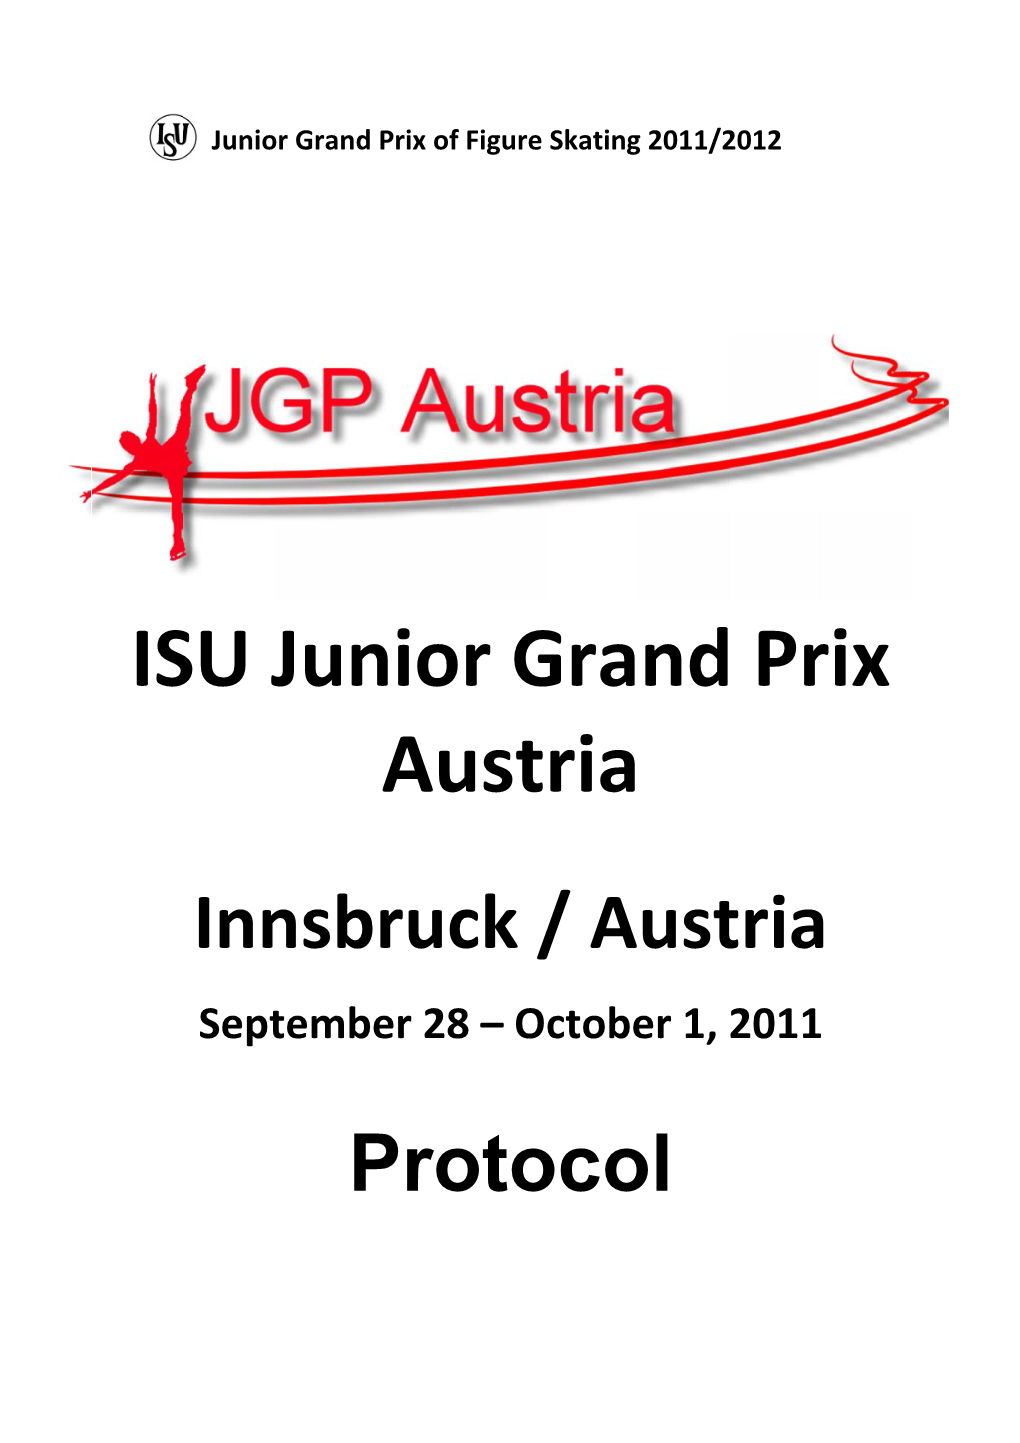 ISU Junior Grand Prix 2011 Latvia, Riga